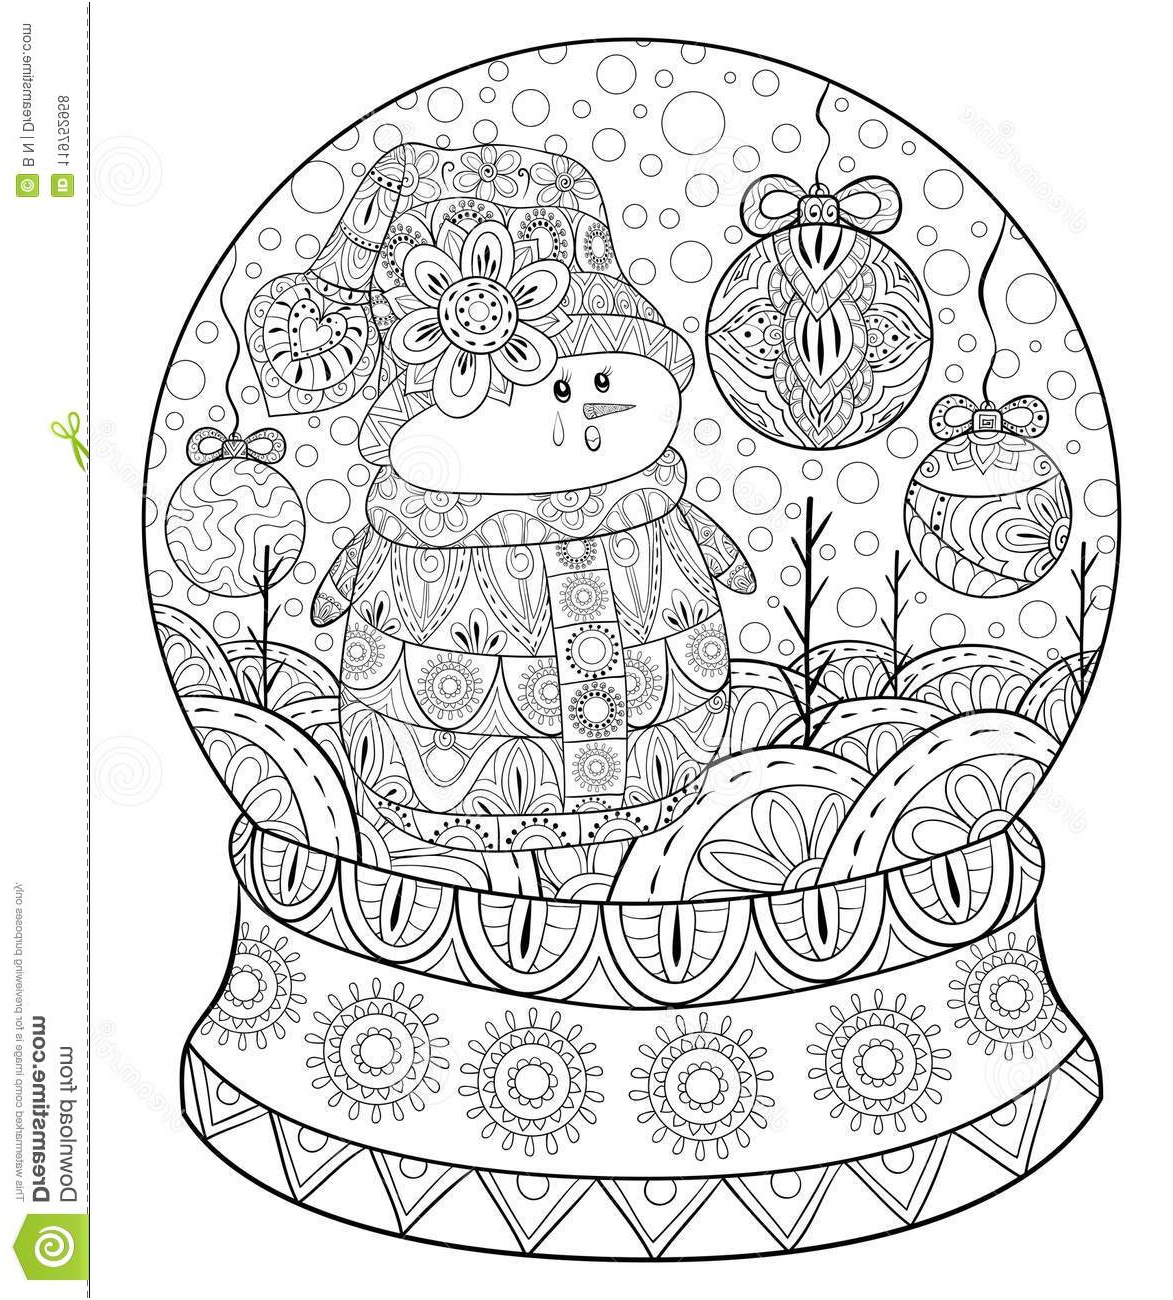 livre coloriage adulte paginent globe mignon noël des boules bonhomme neige décoration détente image